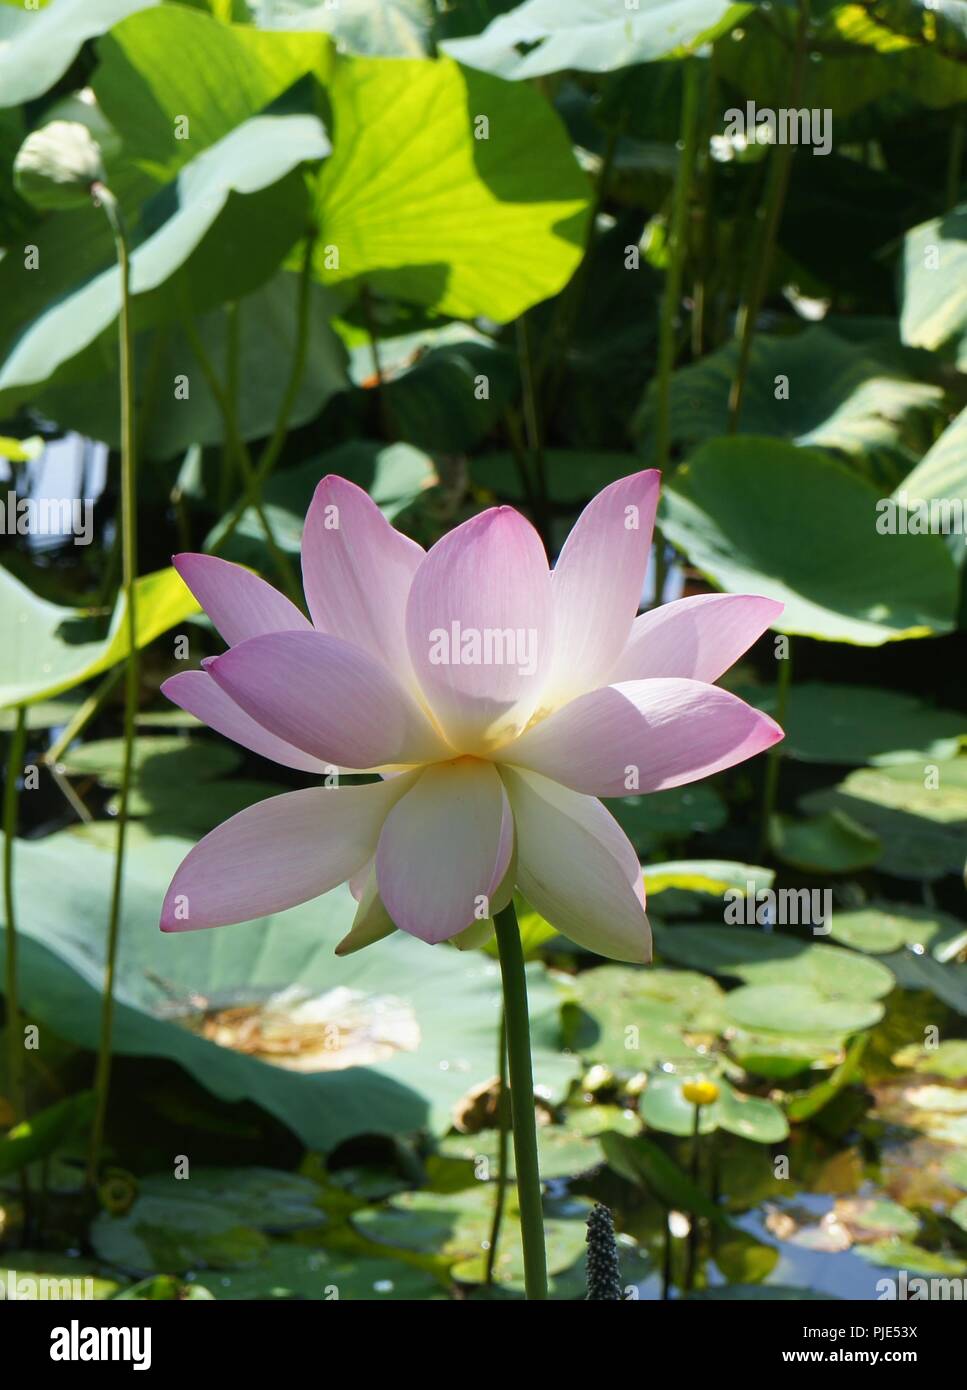 Gros plan de fleur rose de lotus nemumbo lucifera, lotus, lotus sacré indien, l'Inde, de haricot haricot égyptien, lotus, close-up d'un lotus rose lucifera Banque D'Images